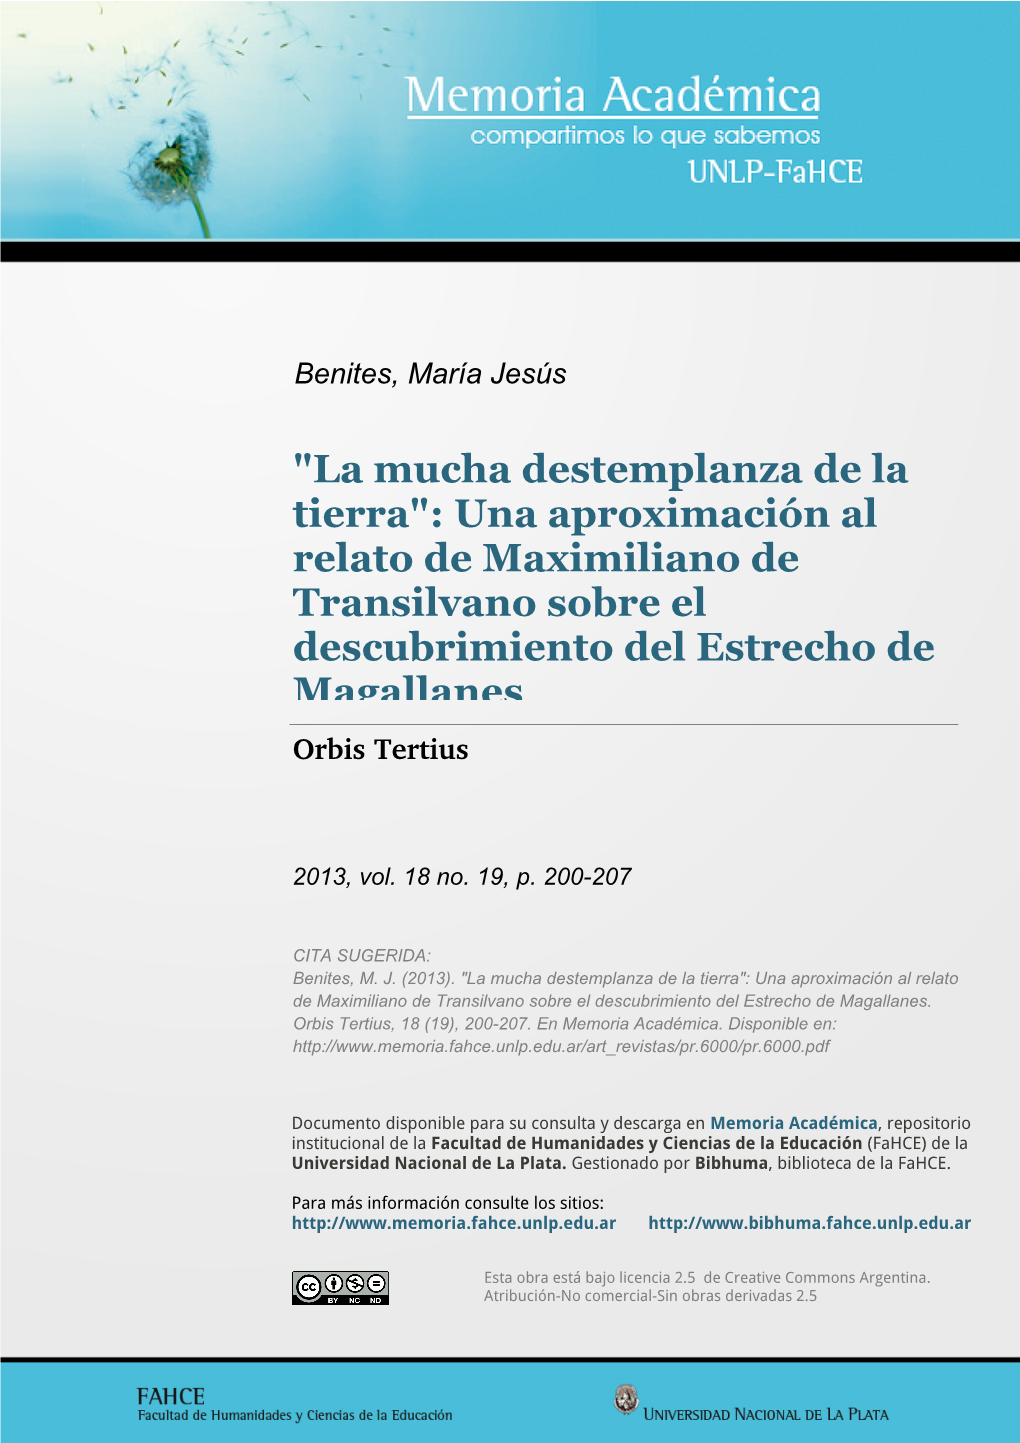 Una Aproximación Al Relato De Maximiliano De Transilvano Sobre El Descubrimiento Del Estrecho De Magallanes Orbis Tertius